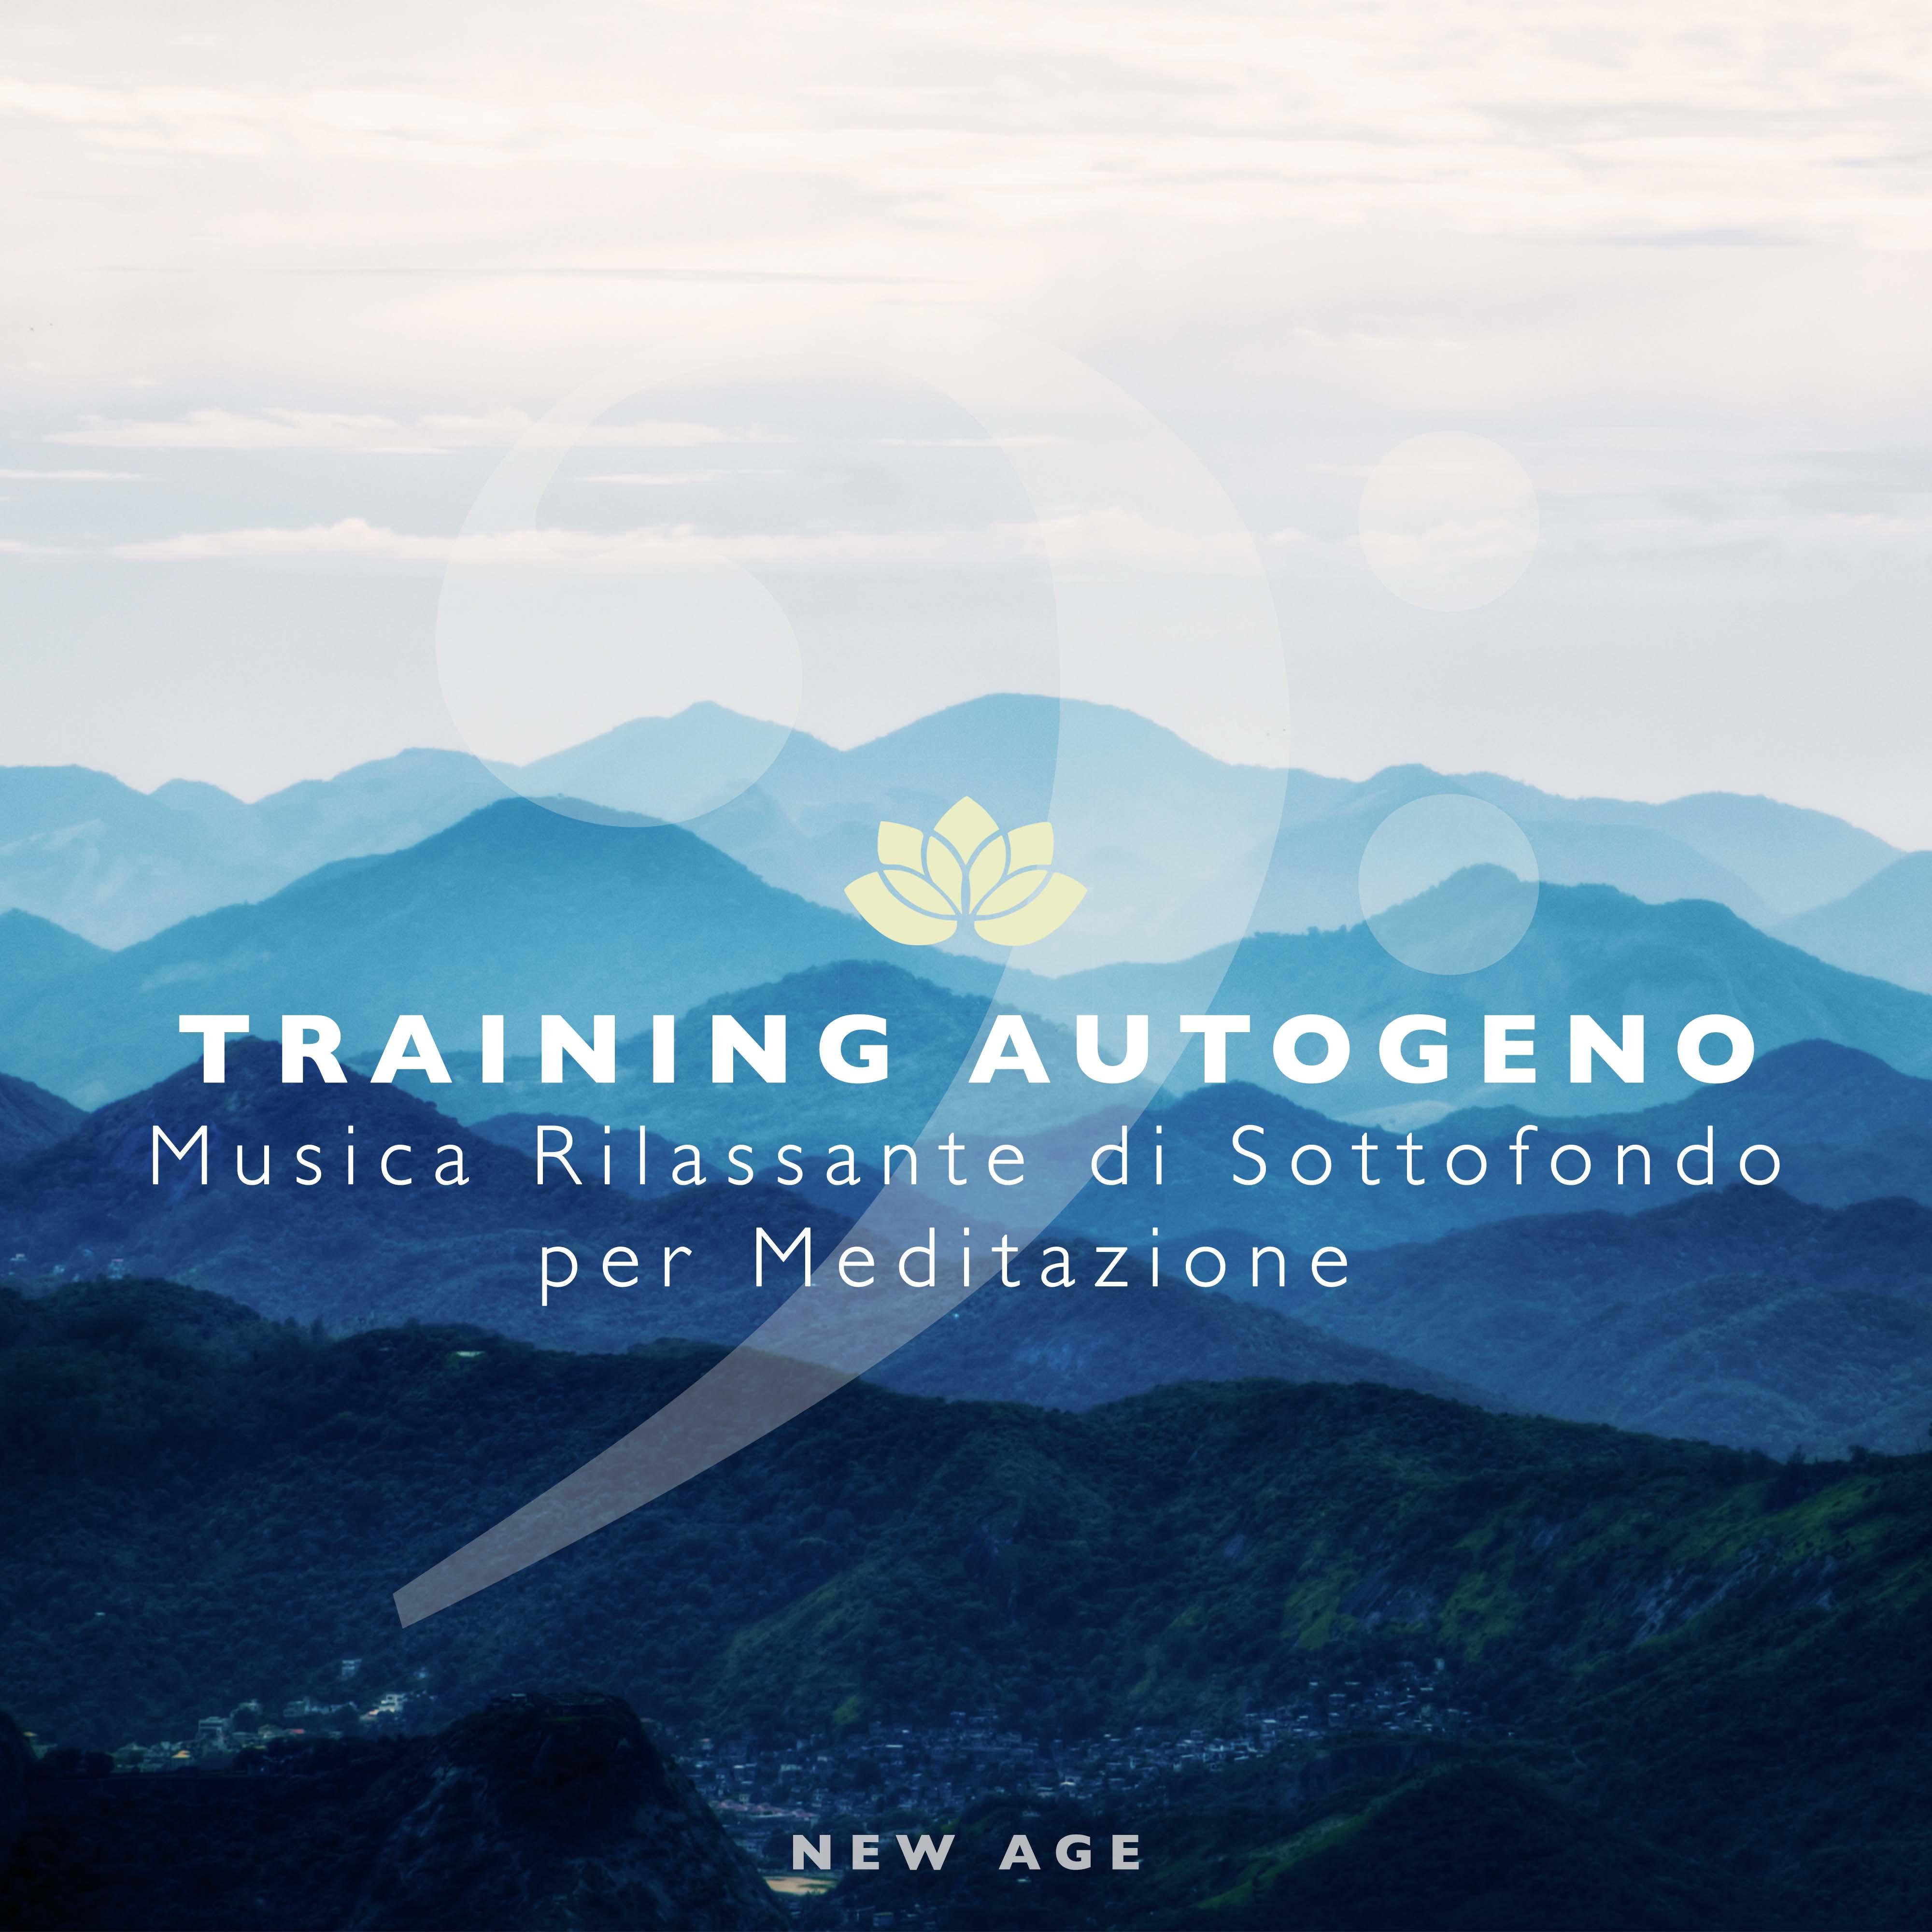 Training Autogeno - Musica Rilassante di Sottofondo per Meditazione e/o Yoga con Suoni della Natura